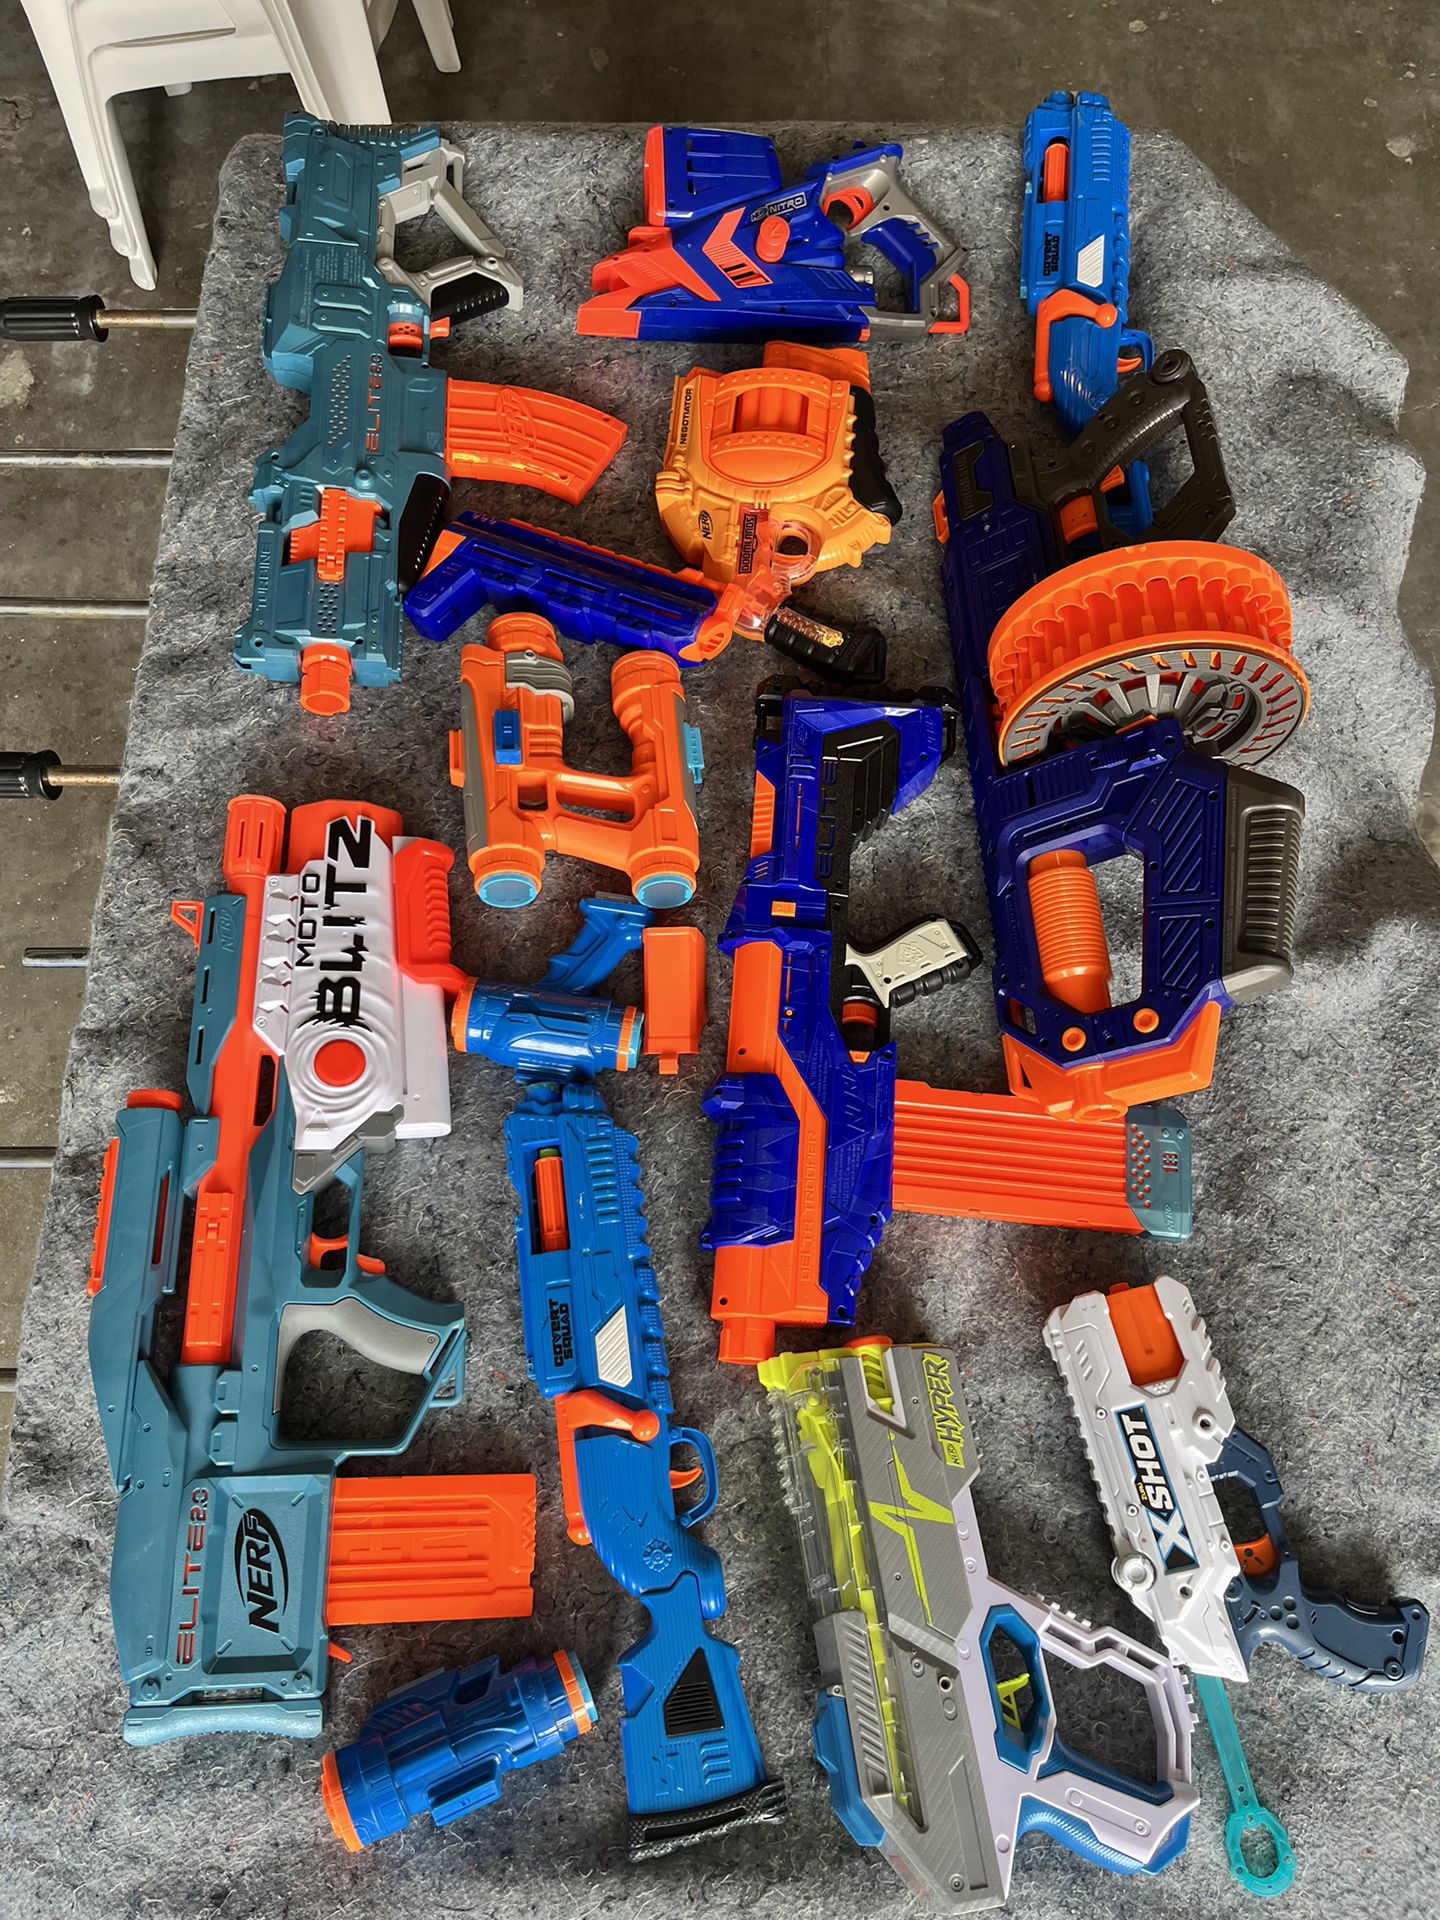 10 Nerf Guns for $55